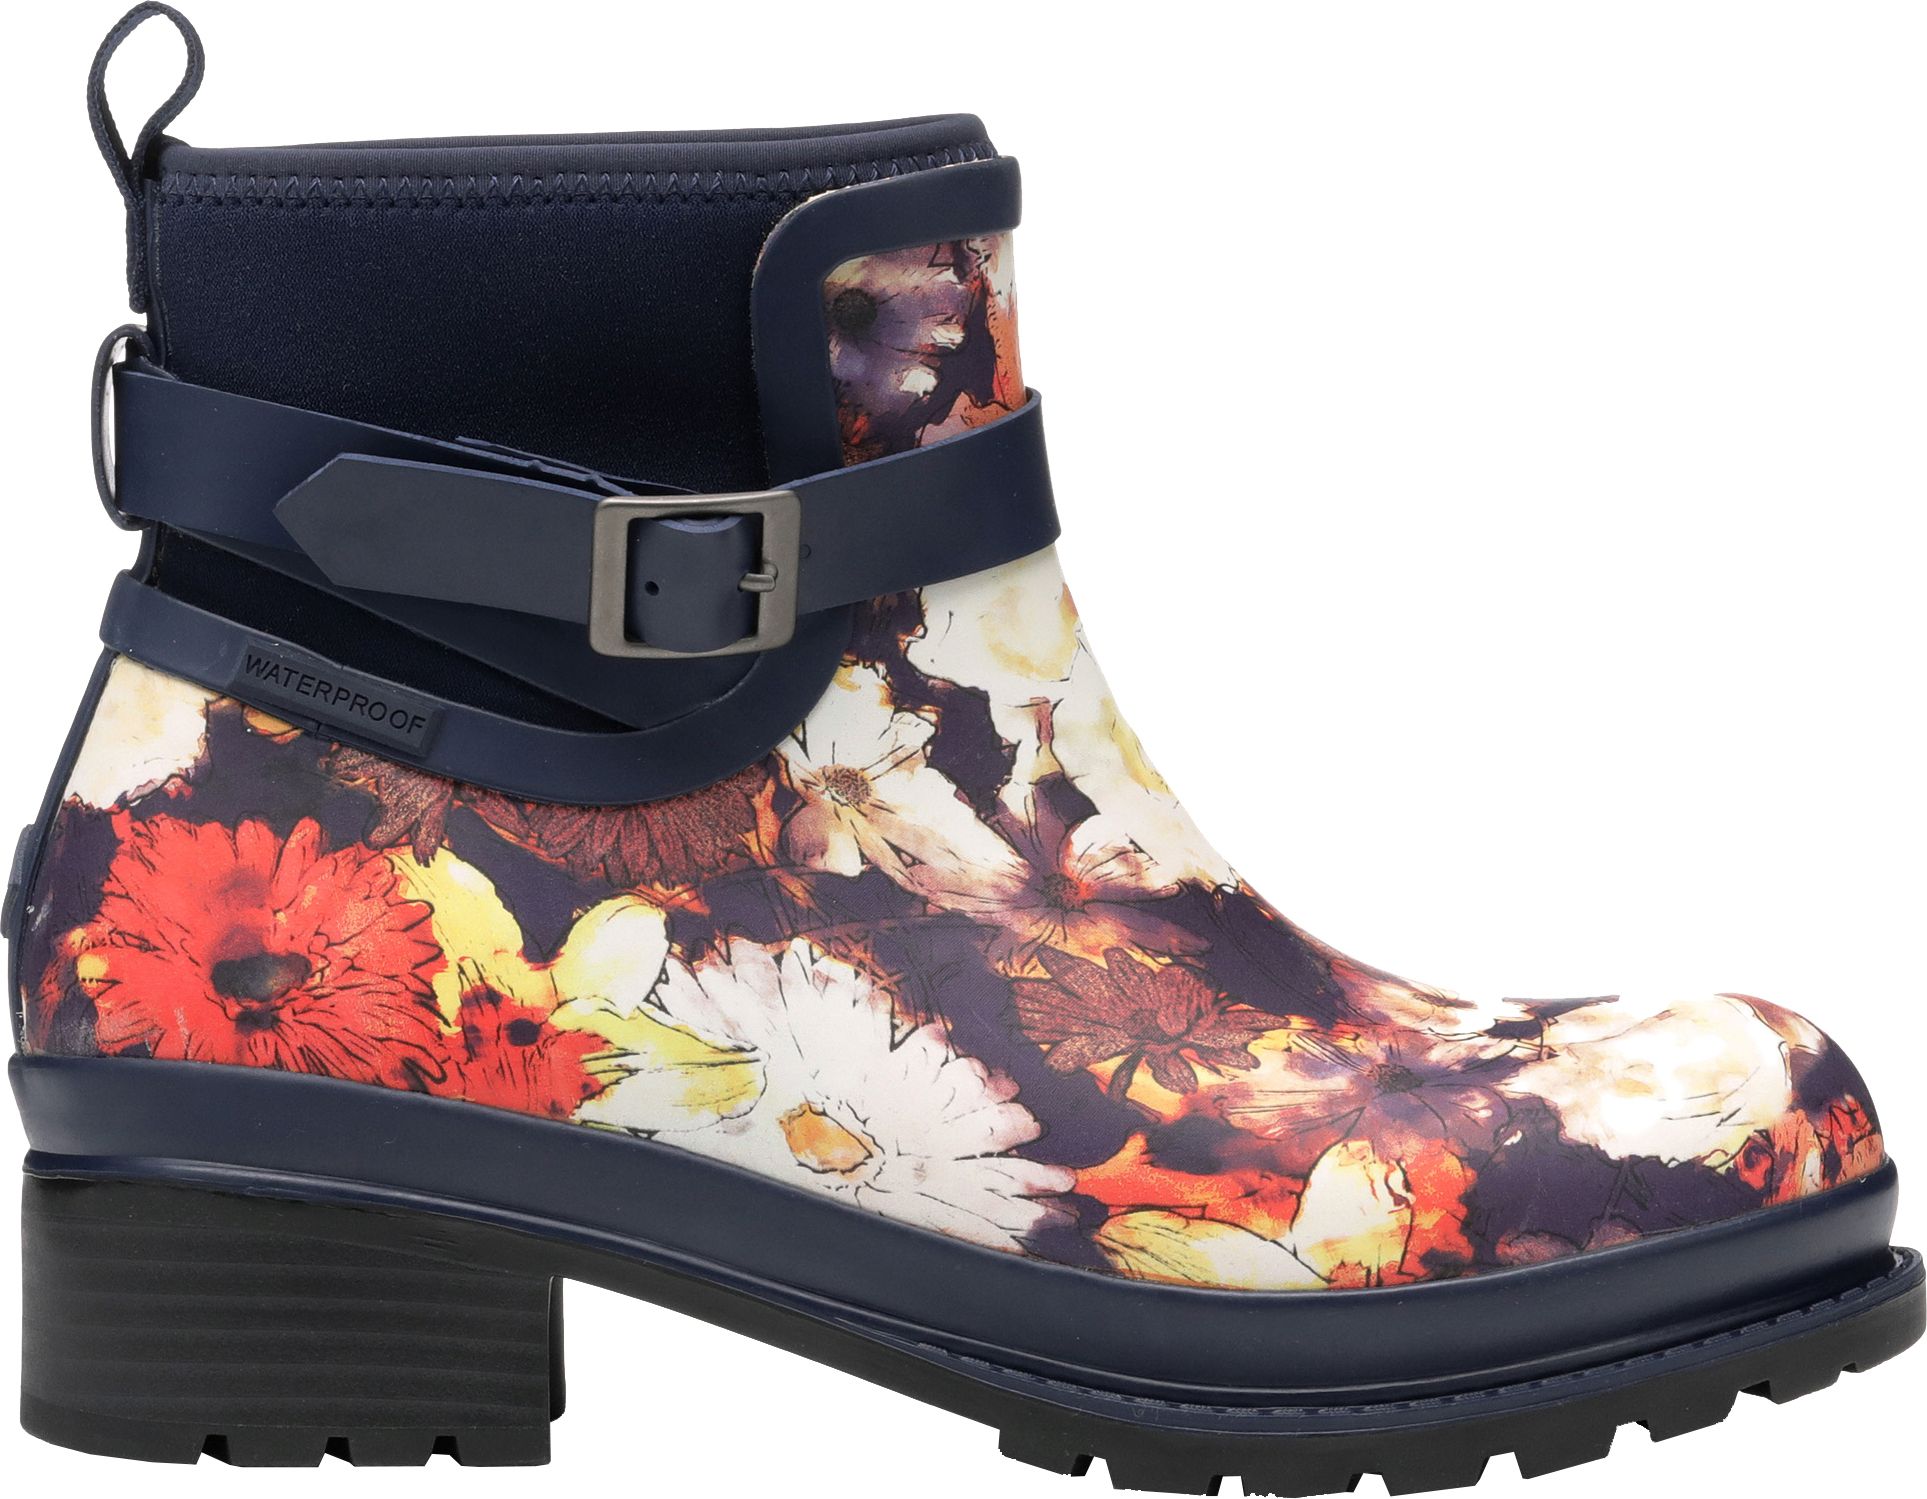 women's ankle rubber rain boots